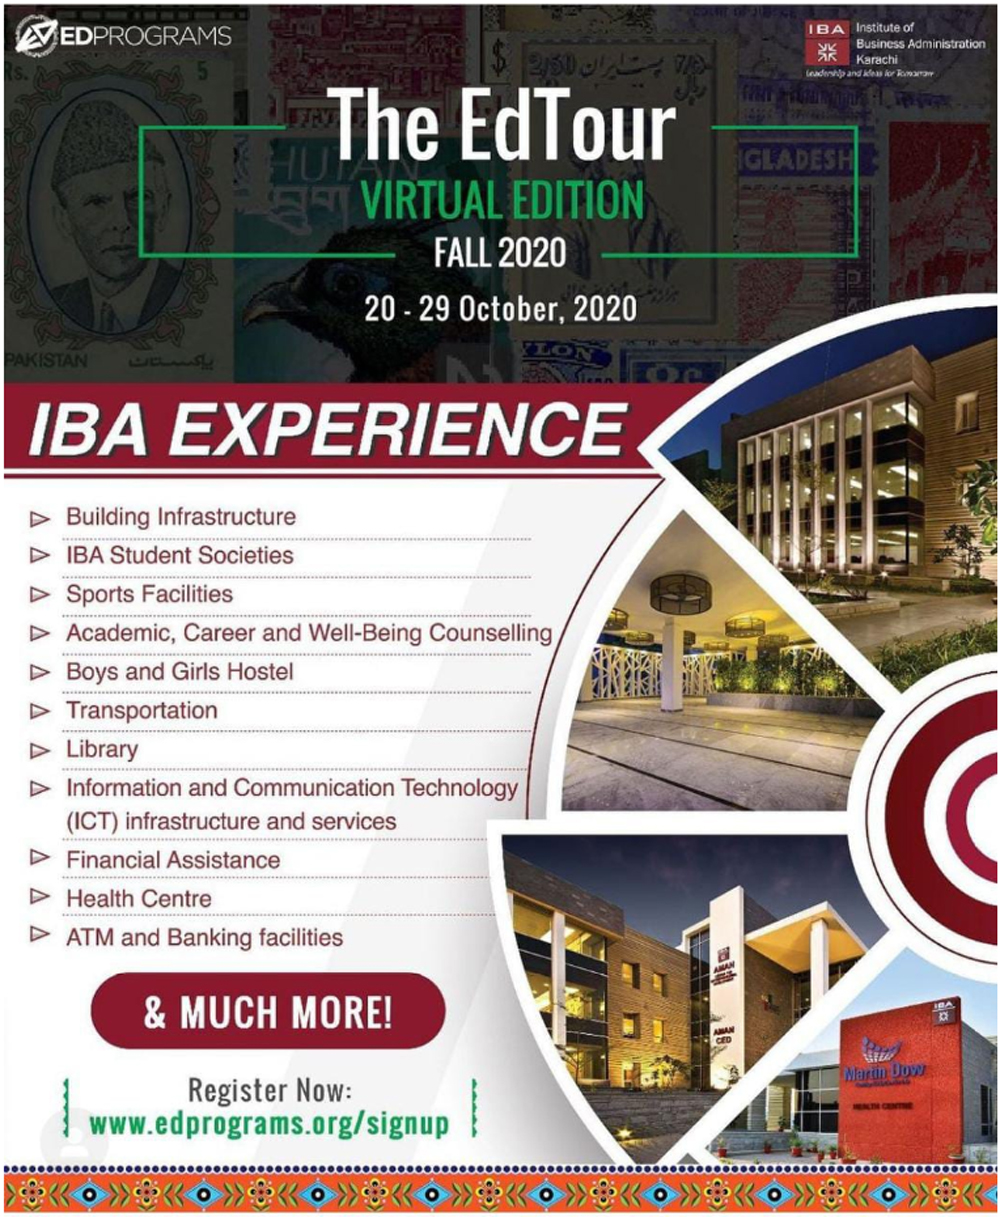 IBA Karachi participates in EdTour 2020 - Virtual Edition